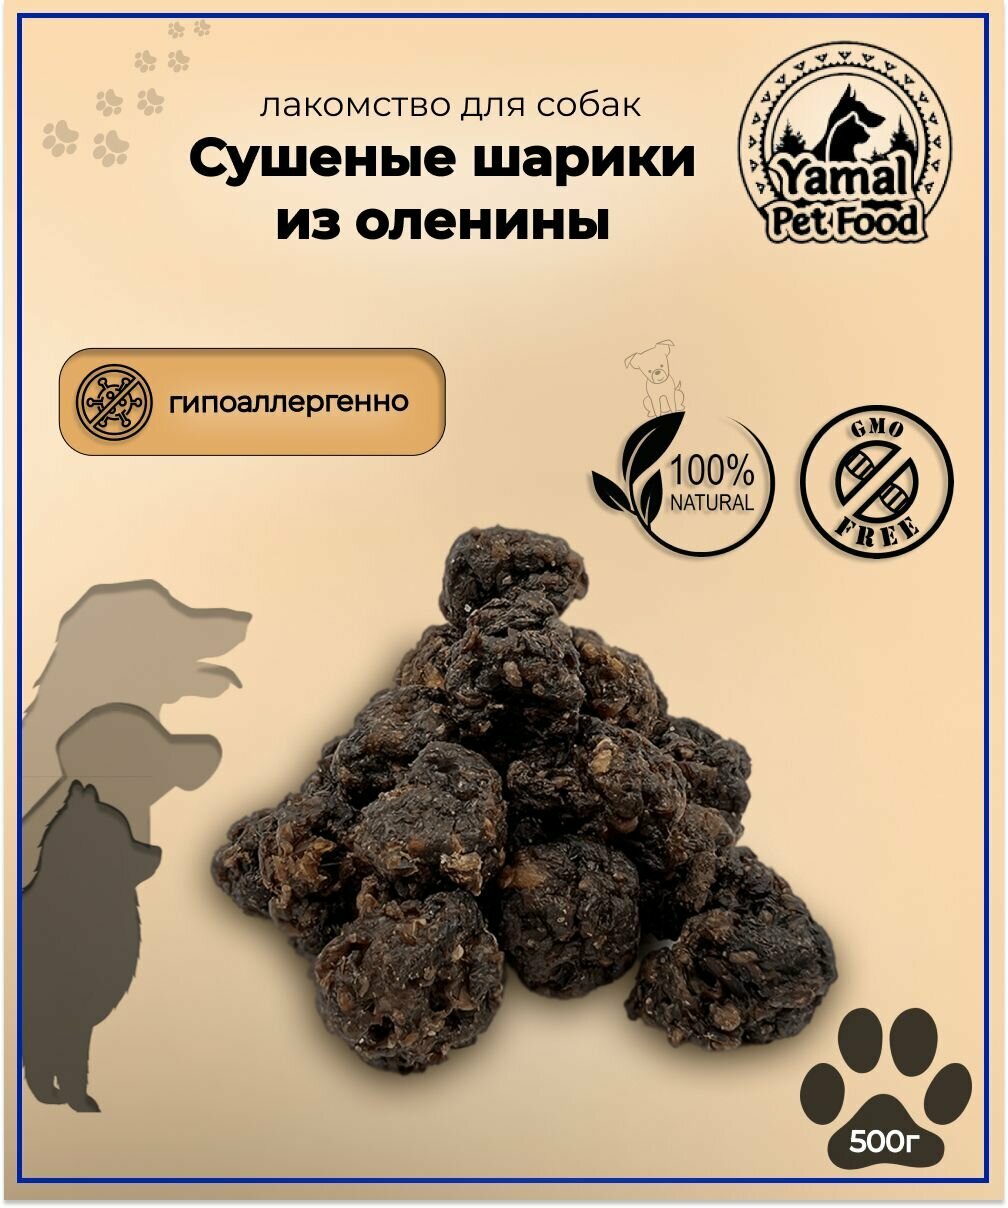 Лакомство для собак "Шарики мит болы из оленины сушеные" 500 гр